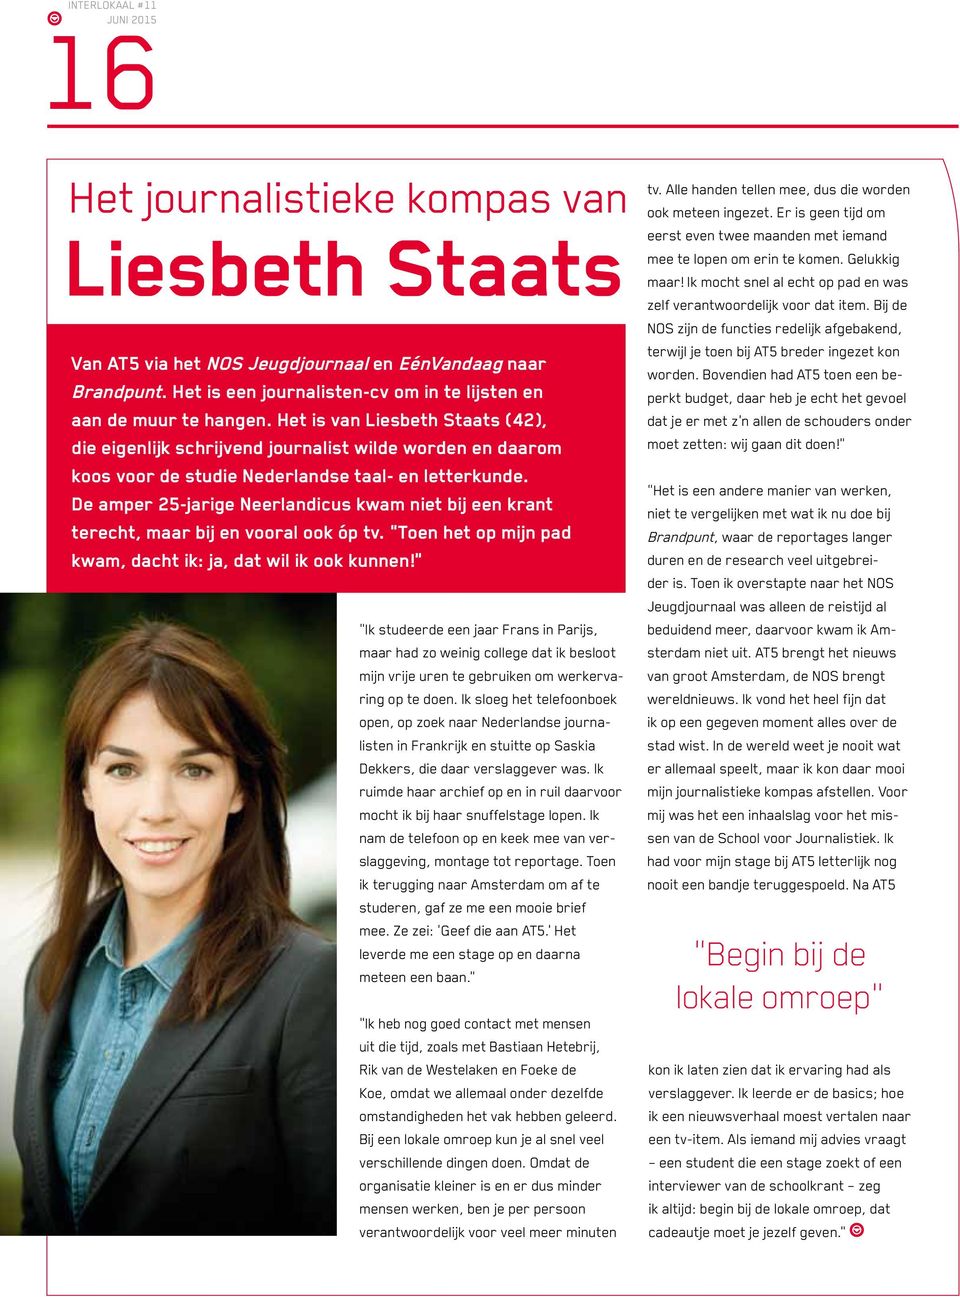 Het is van Liesbeth Staats (42), die eigenlijk schrijvend journalist wilde worden en daarom koos voor de studie Nederlandse taal- en letterkunde.